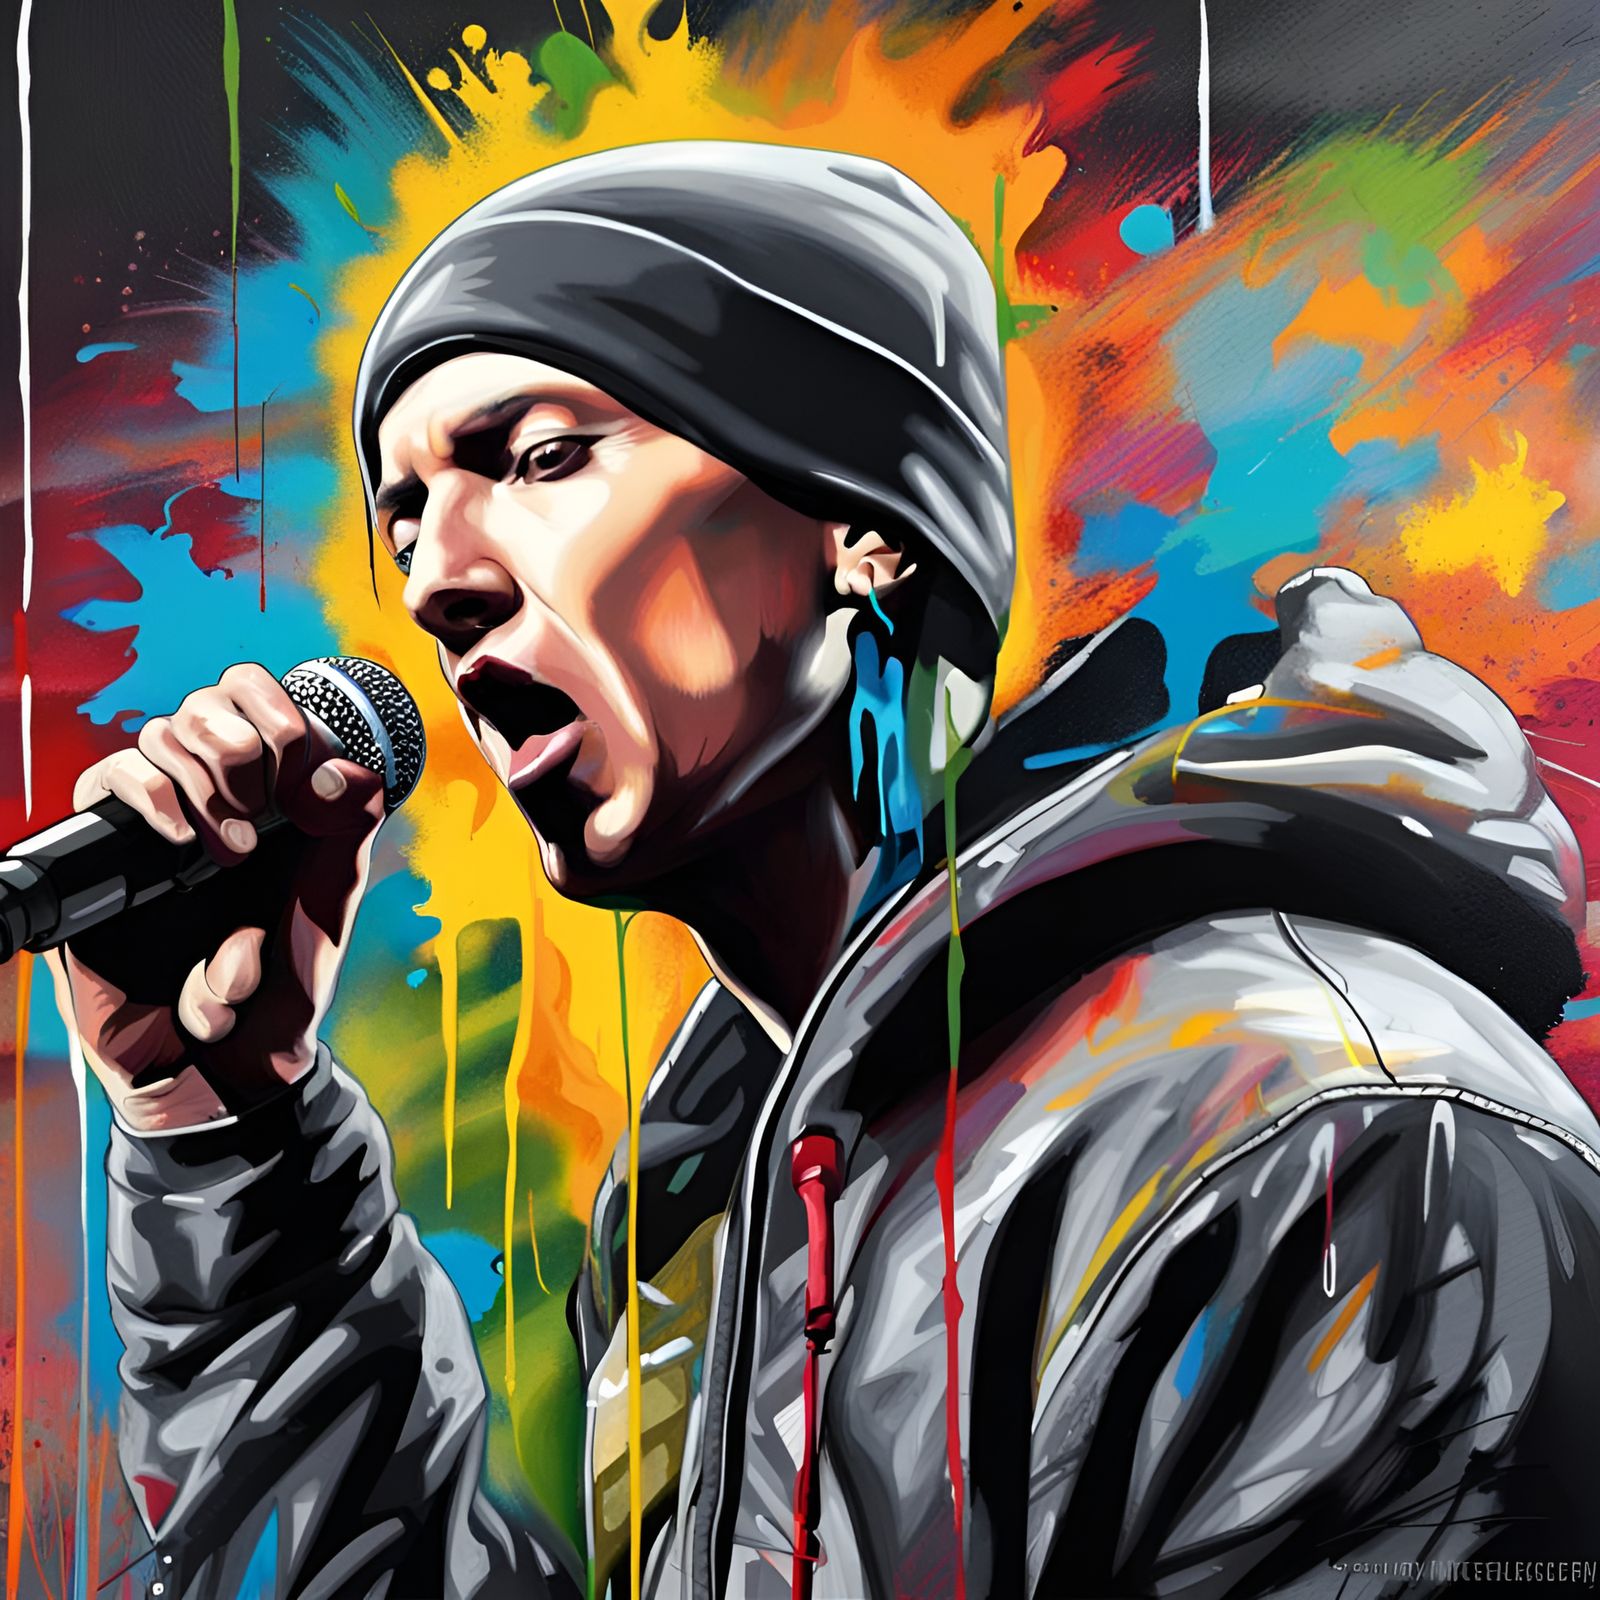 Eminem the King of Hip Hop